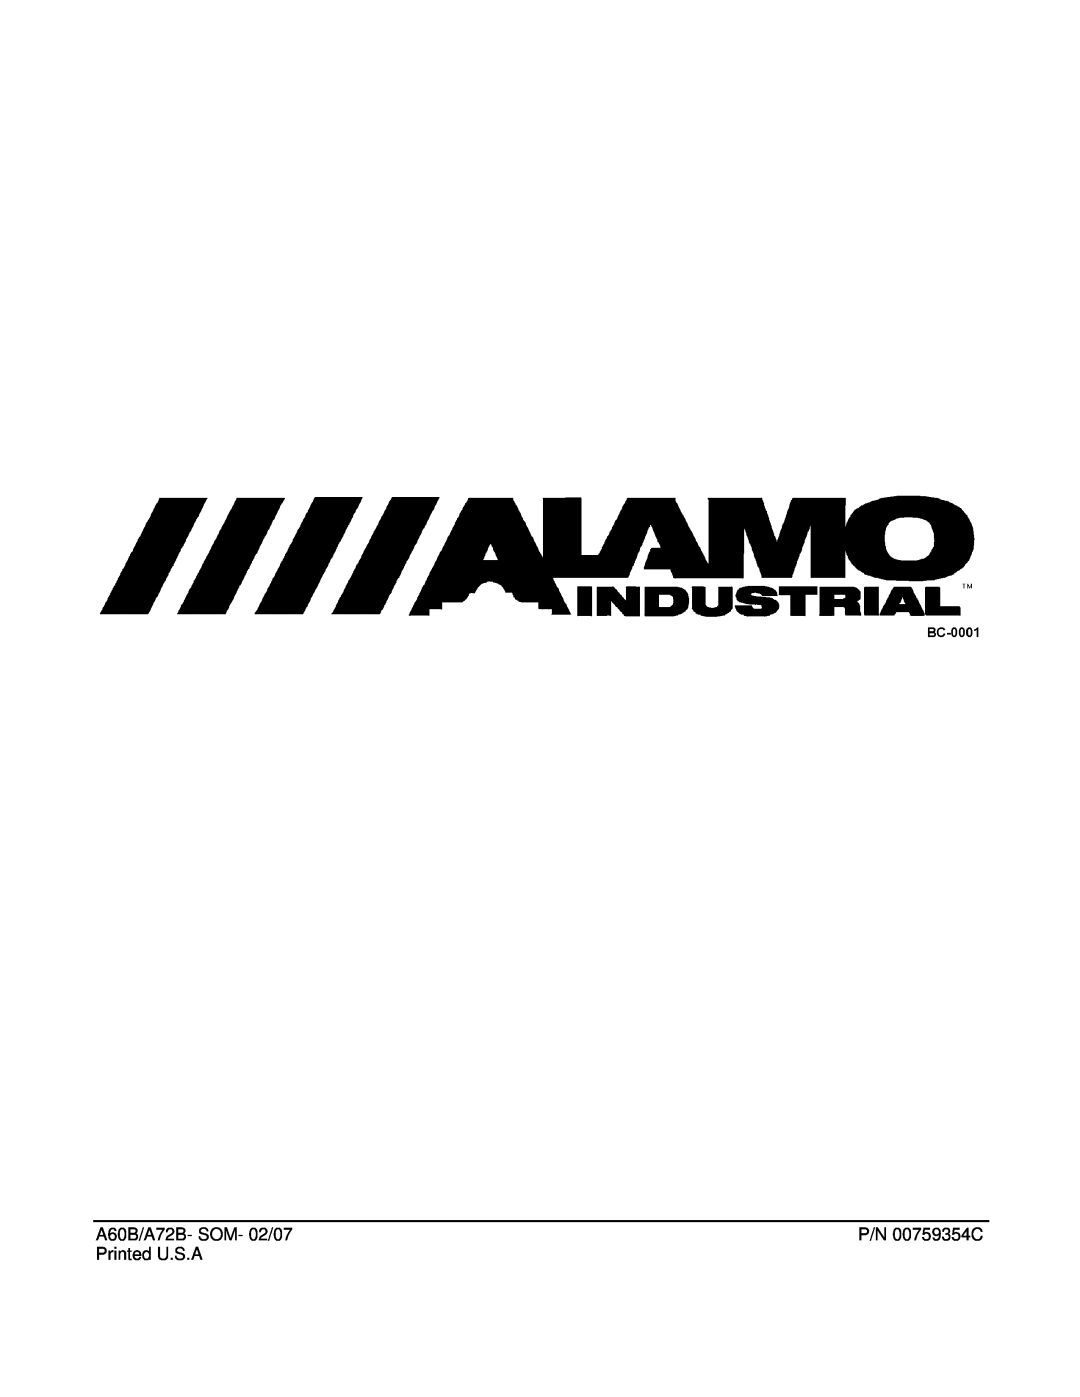 Alamo manual A60B/A72B- SOM- 02/07, P/N 00759354C, Printed U.S.A 